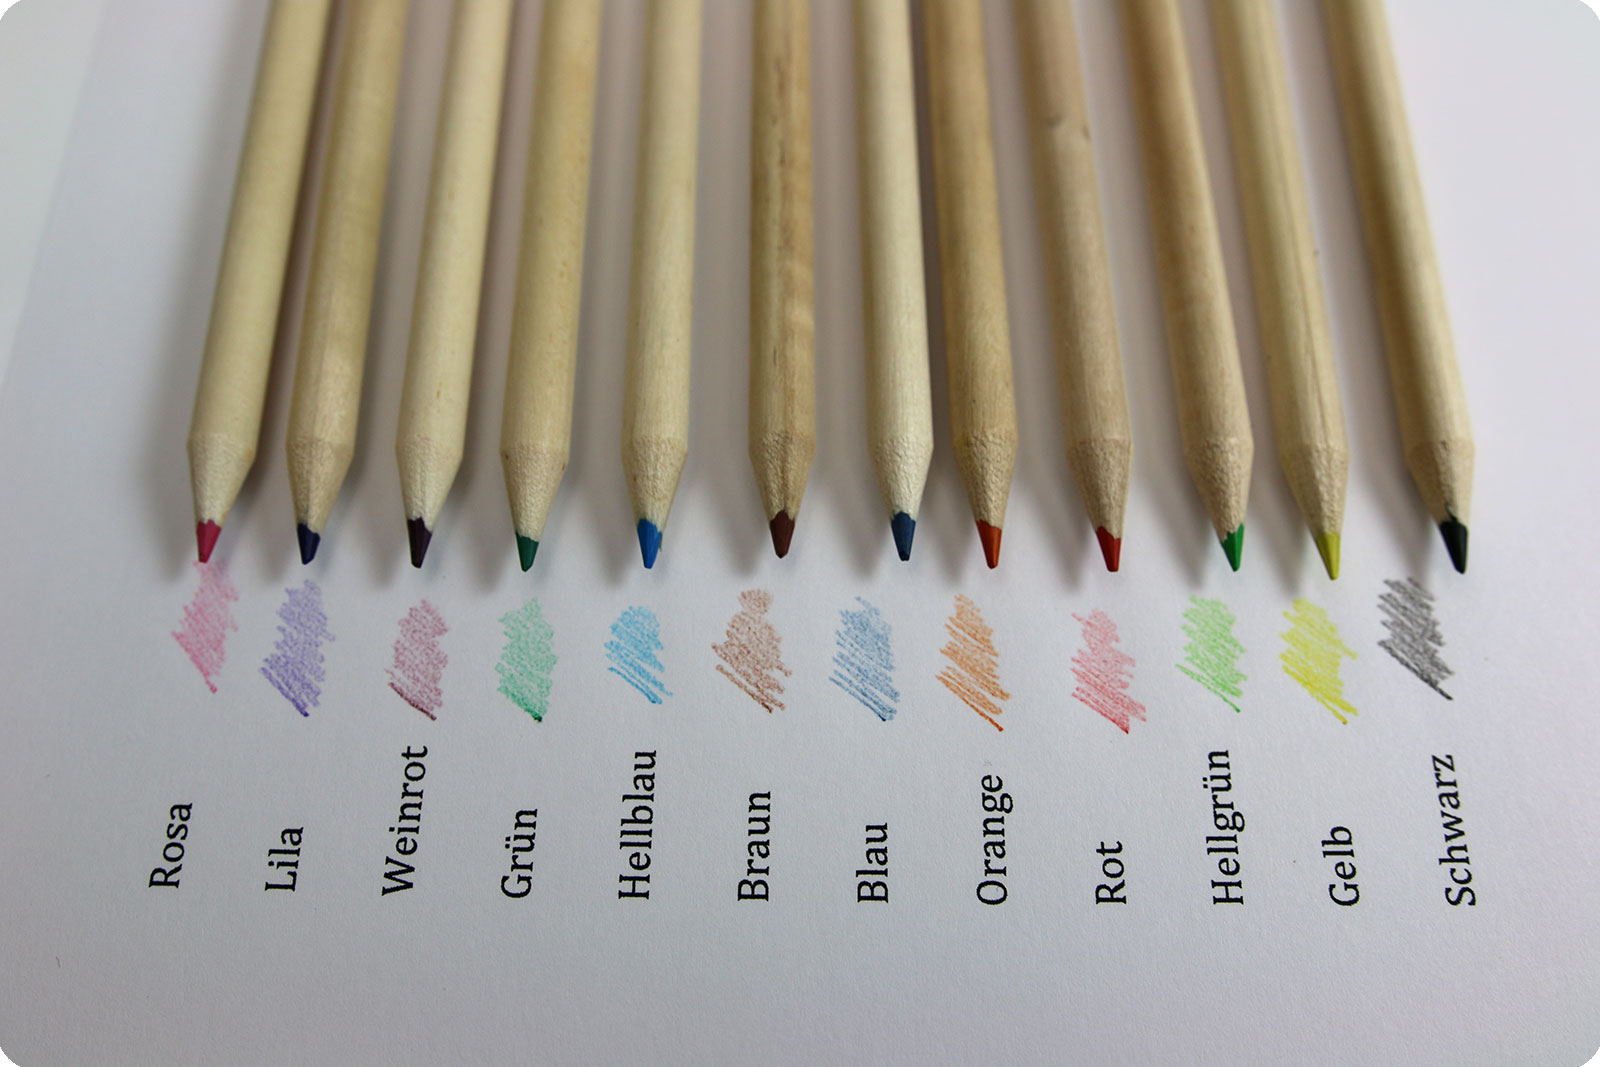 Farben im Stifteköcher